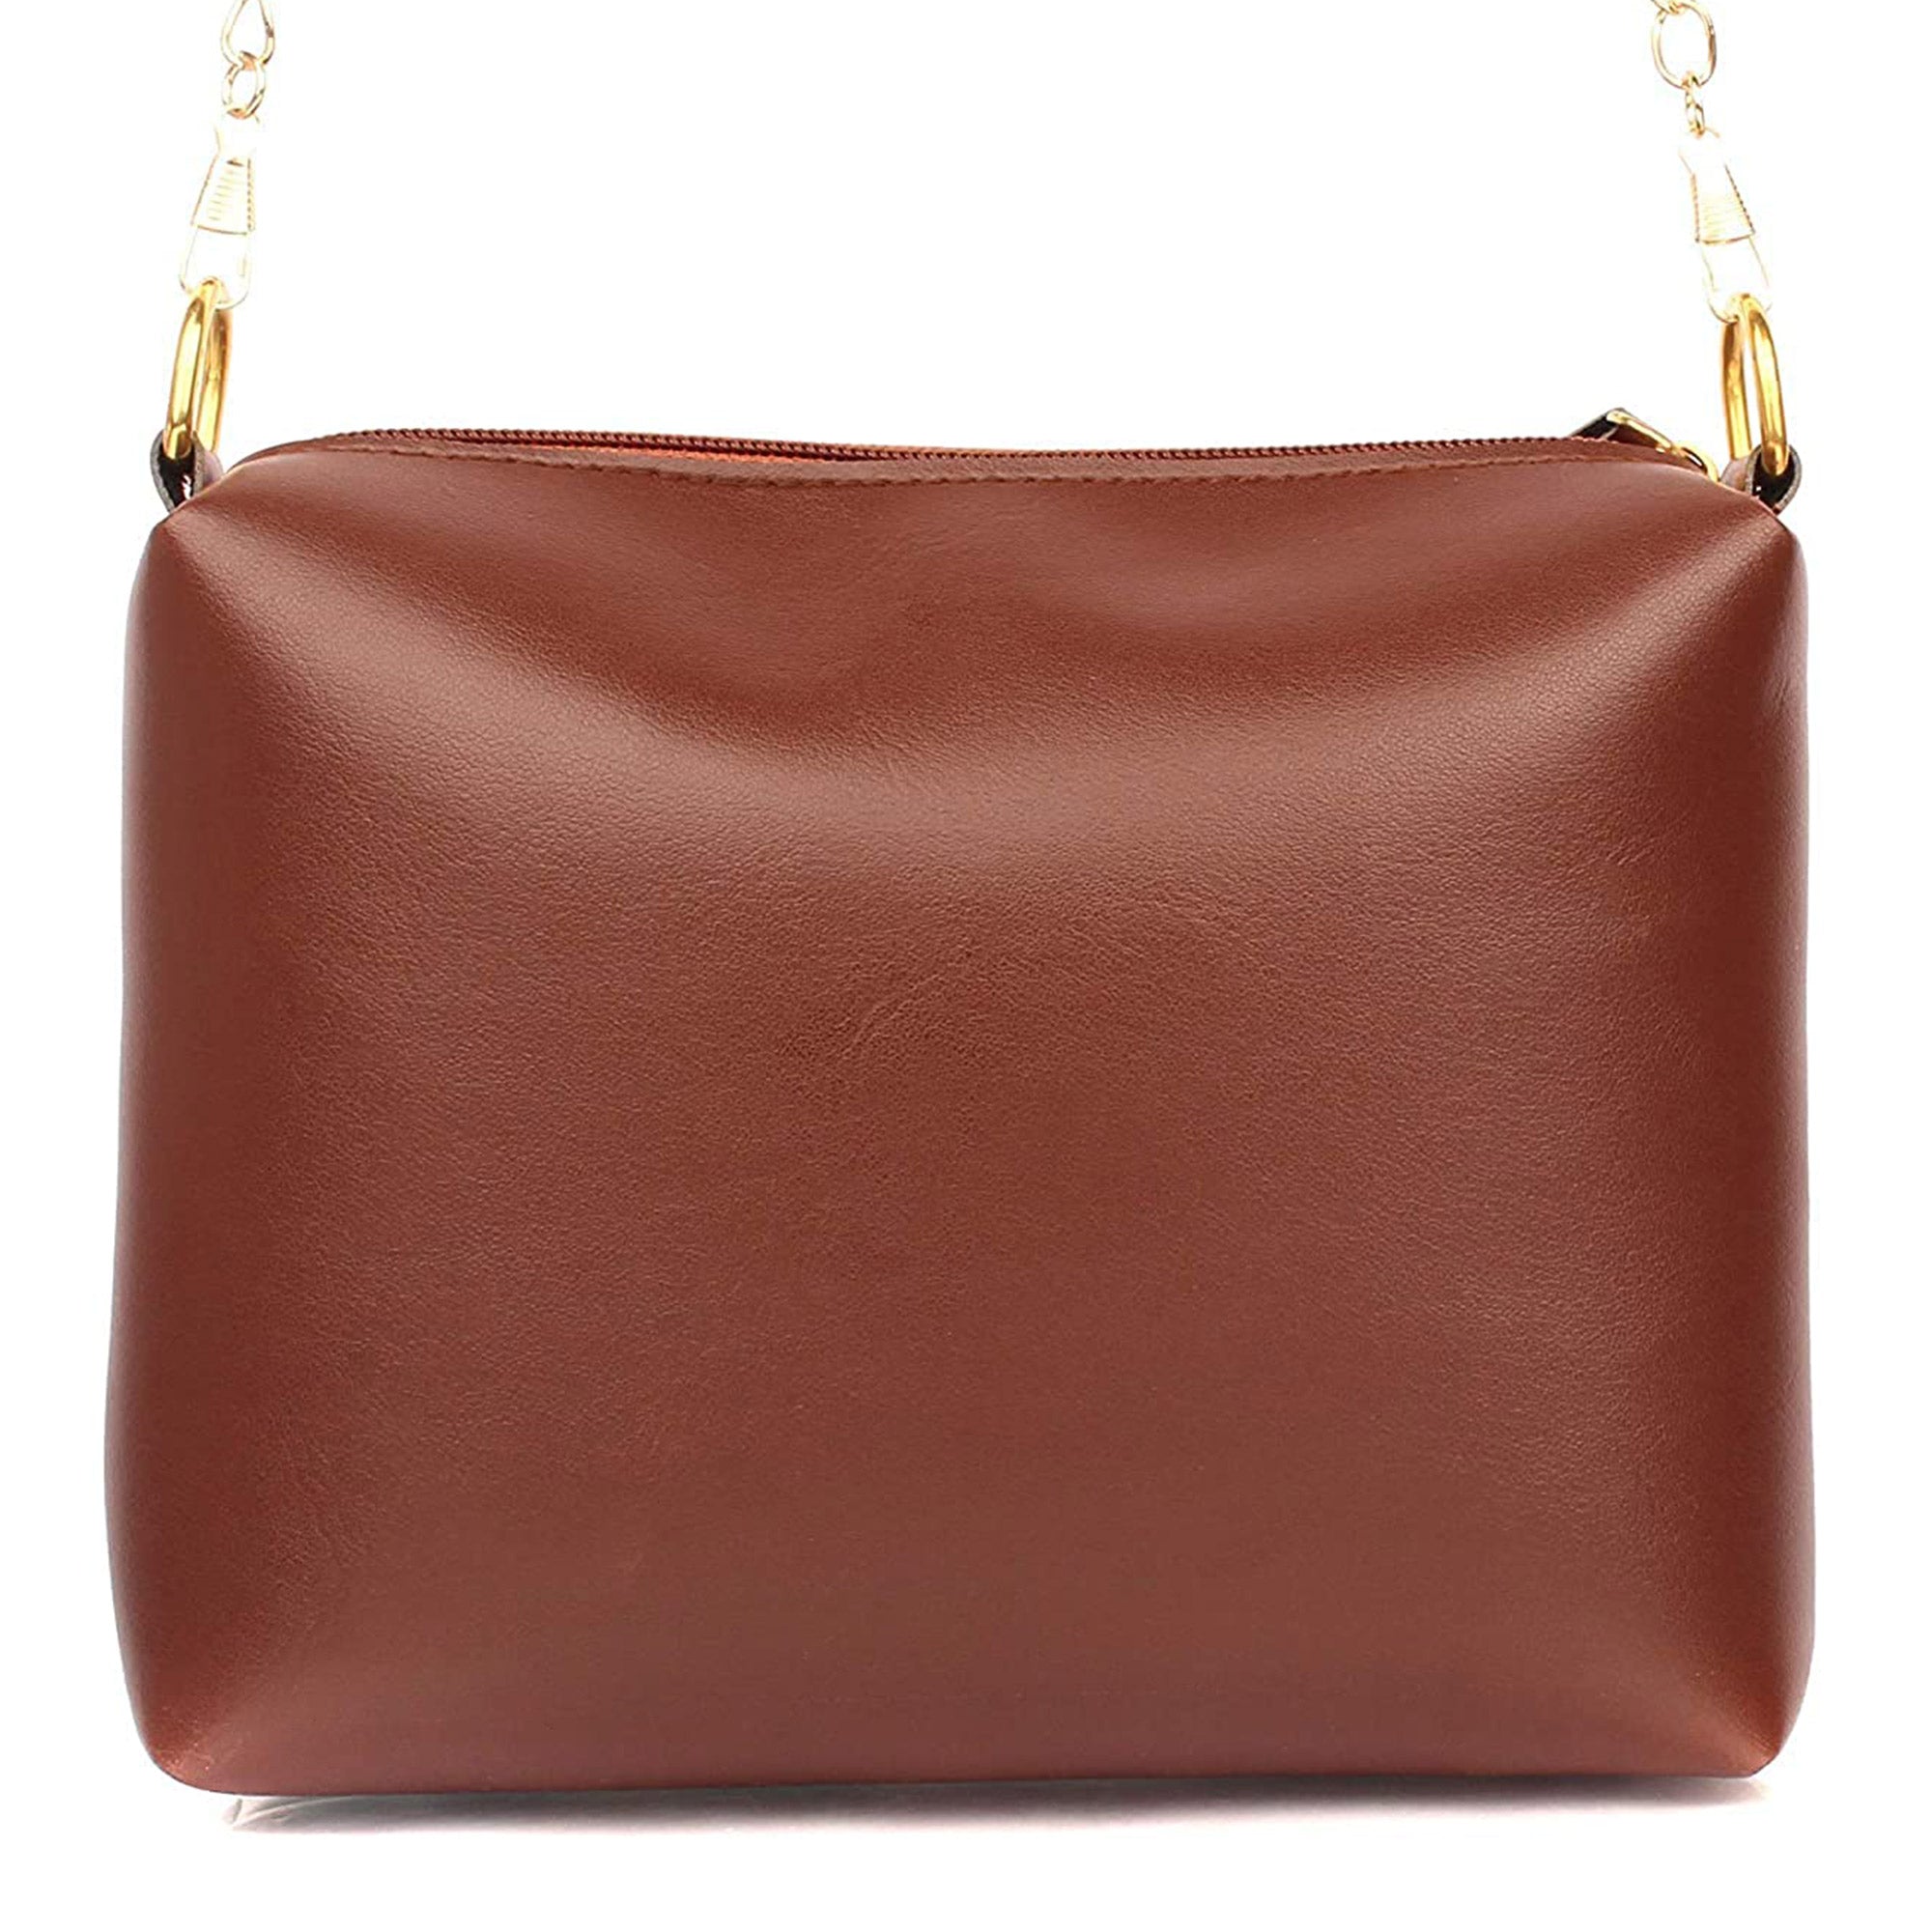 TMN - Women Brown Vegan Leather Golden Chain Sling Bag